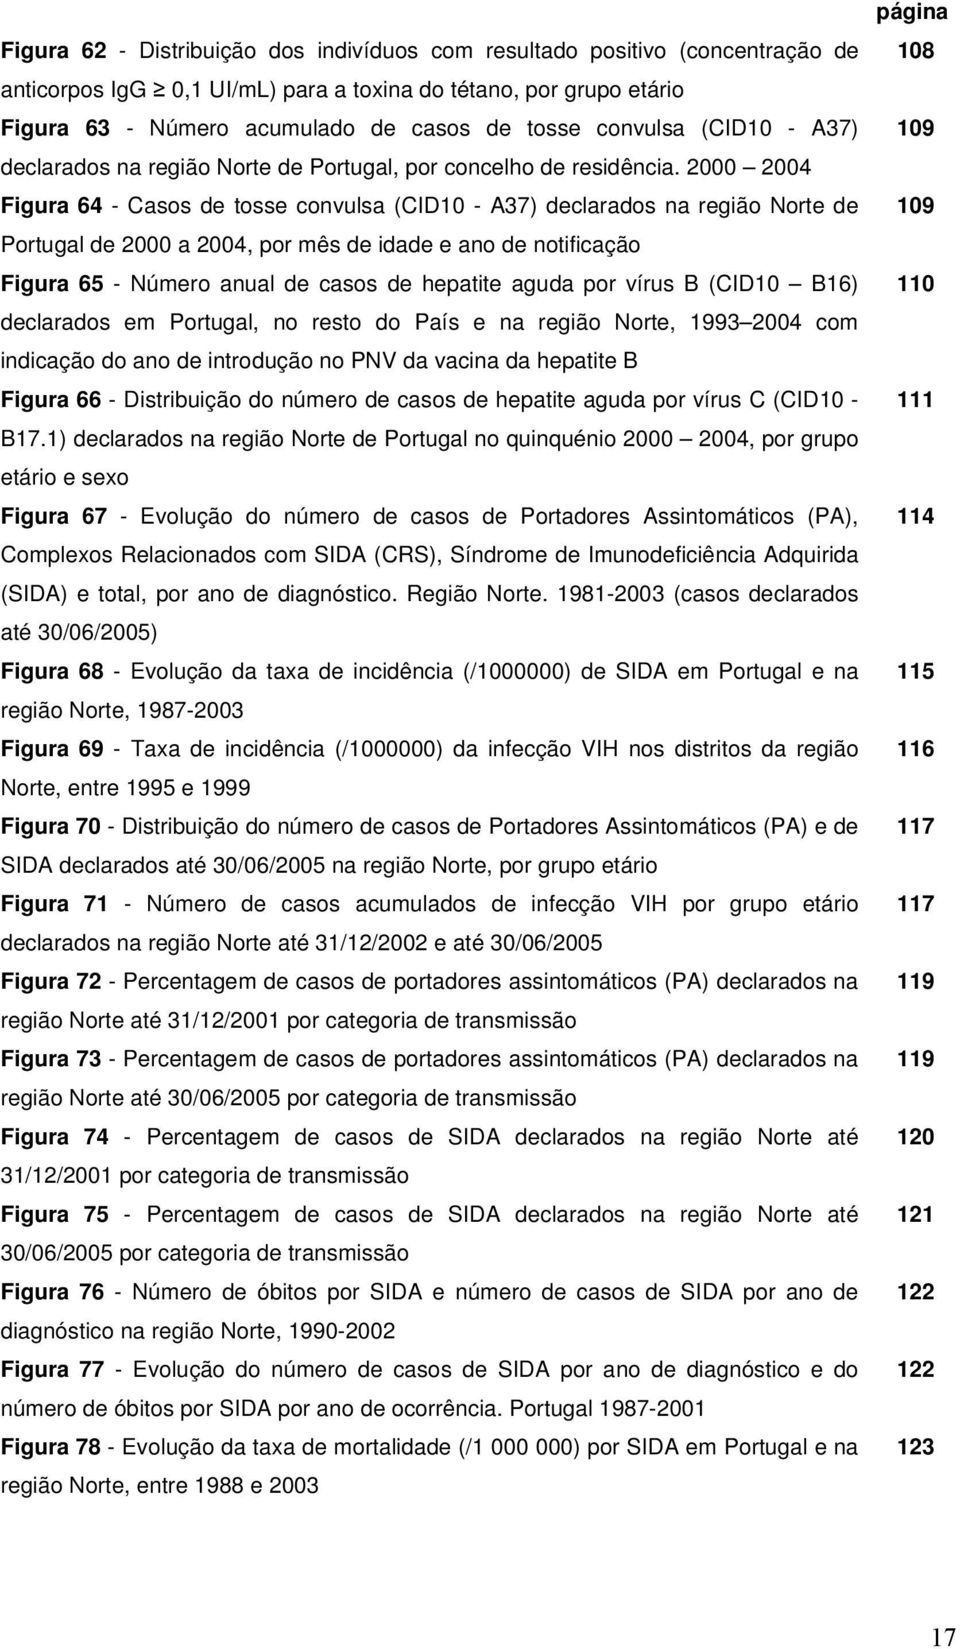 2000 2004 Figura 64 - Casos de tosse convulsa (CID10 - A37) declarados na região Norte de Portugal de 2000 a 2004, por mês de idade e ano de notificação Figura 65 - Número anual de casos de hepatite